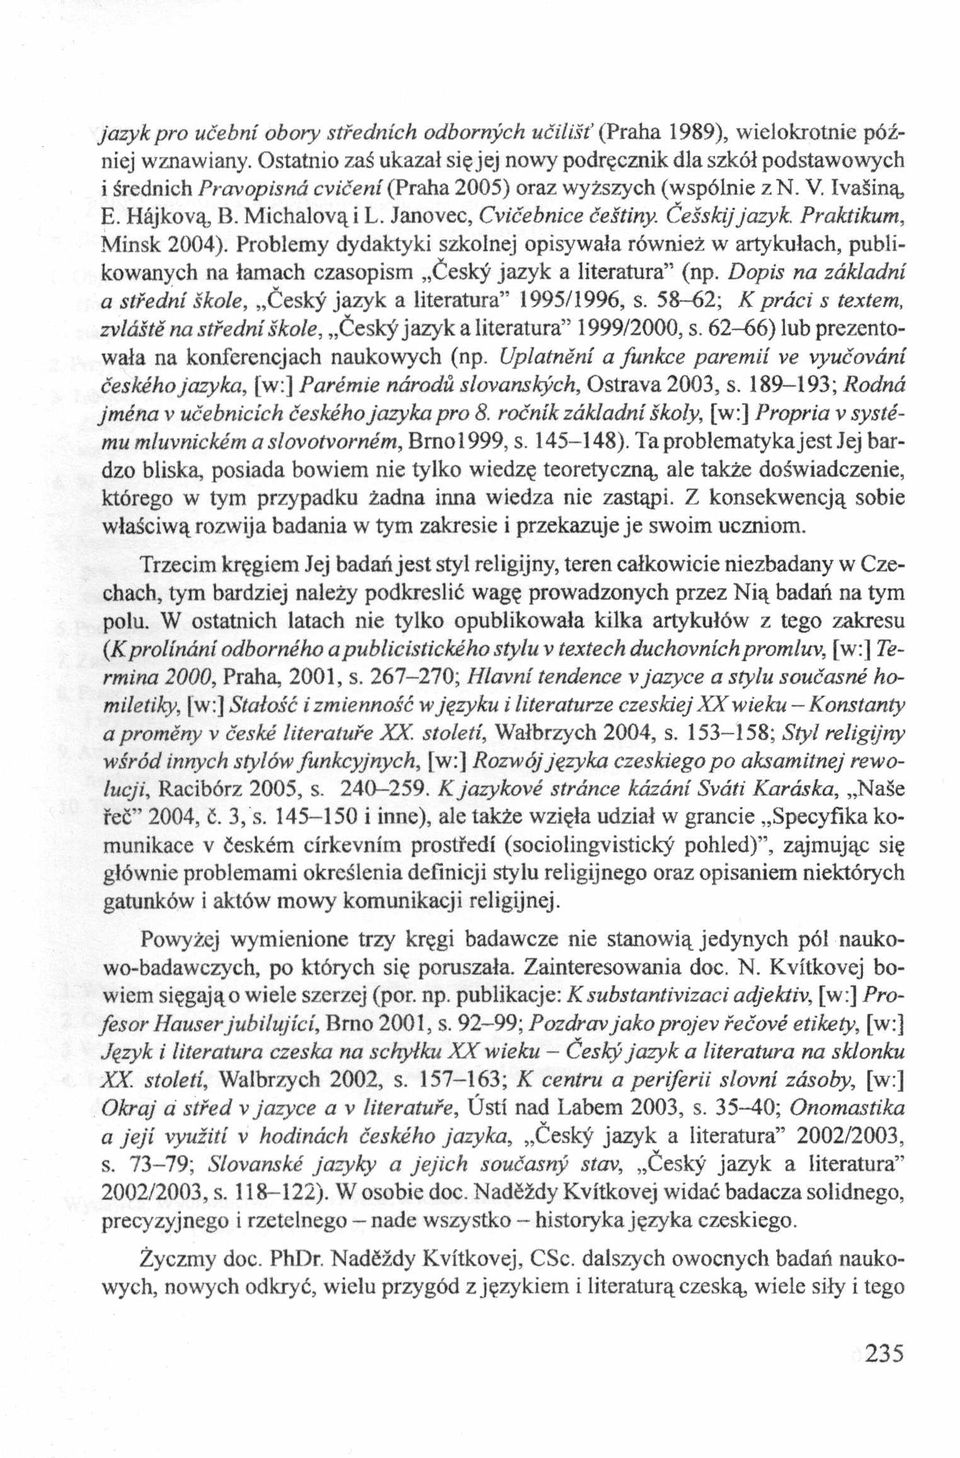 Janovec, Cvićebnice ćeśtiny. Ceśskijjazyk. Praktikum, Mińsk 2004). Problemy dydaktyki szkolnej opisywała również w artykułach, publikowanych na łamach czasopism Ćesky jazyk a literatura (np.